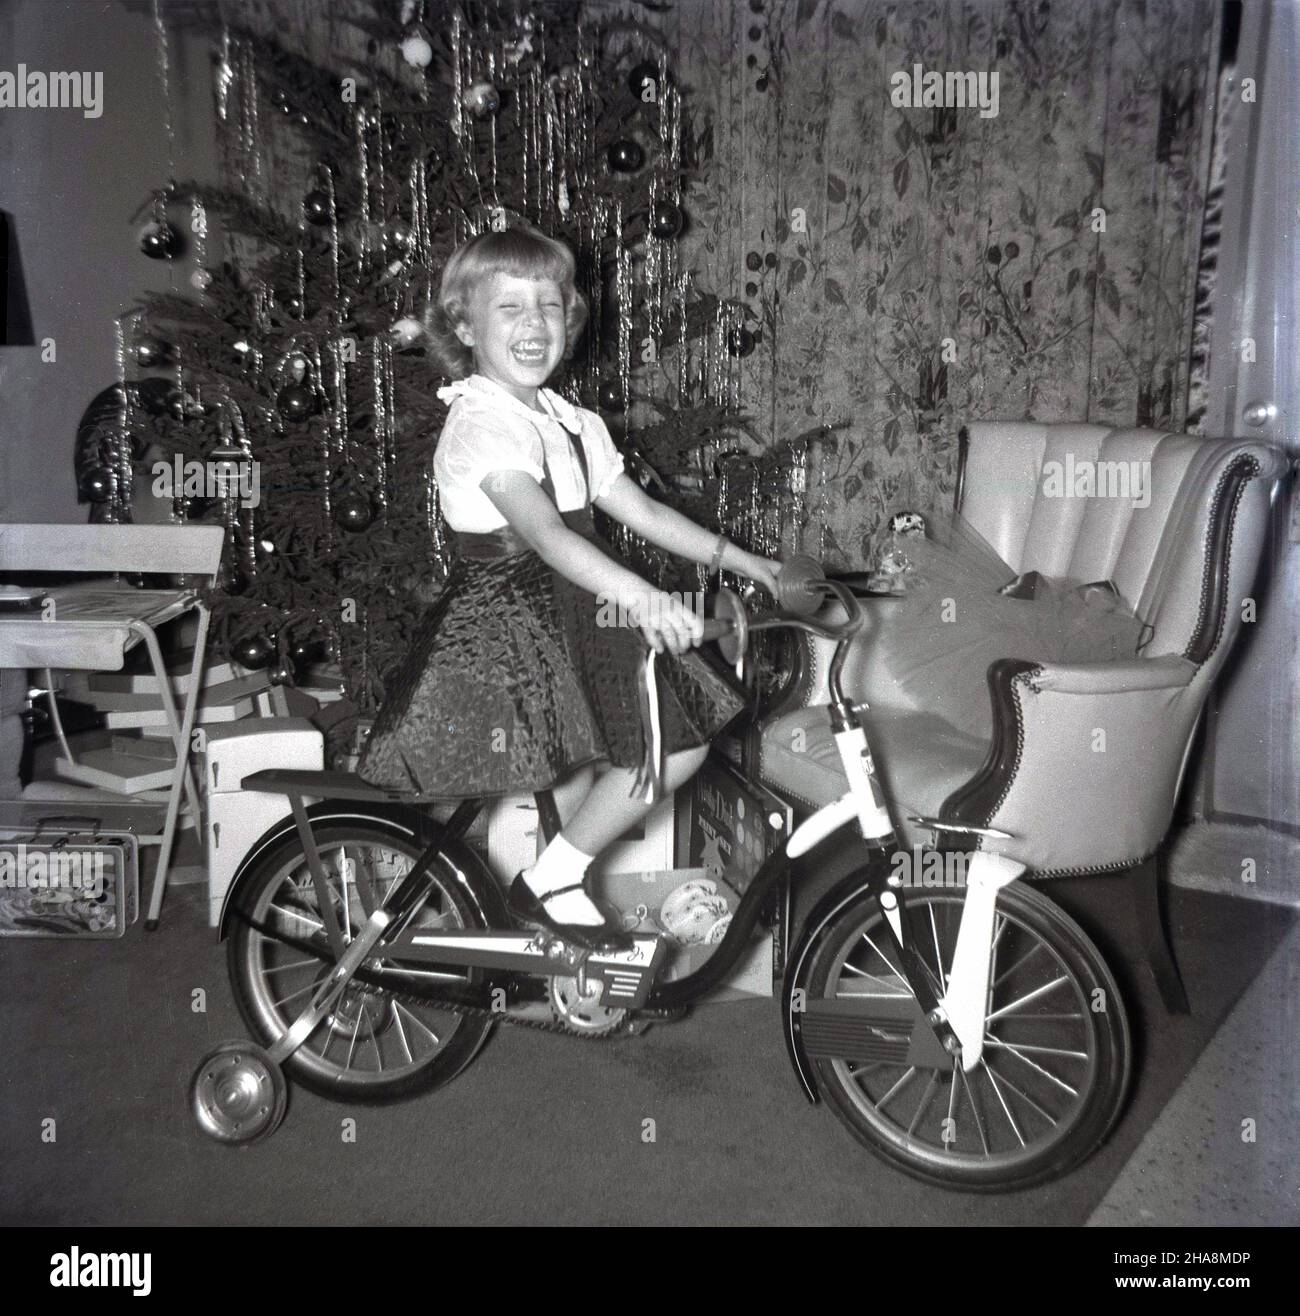 1960s. historique, une jeune fille excitée et ravie assis sur son cadeau de noël, une nouvelle bicyclette. Banque D'Images